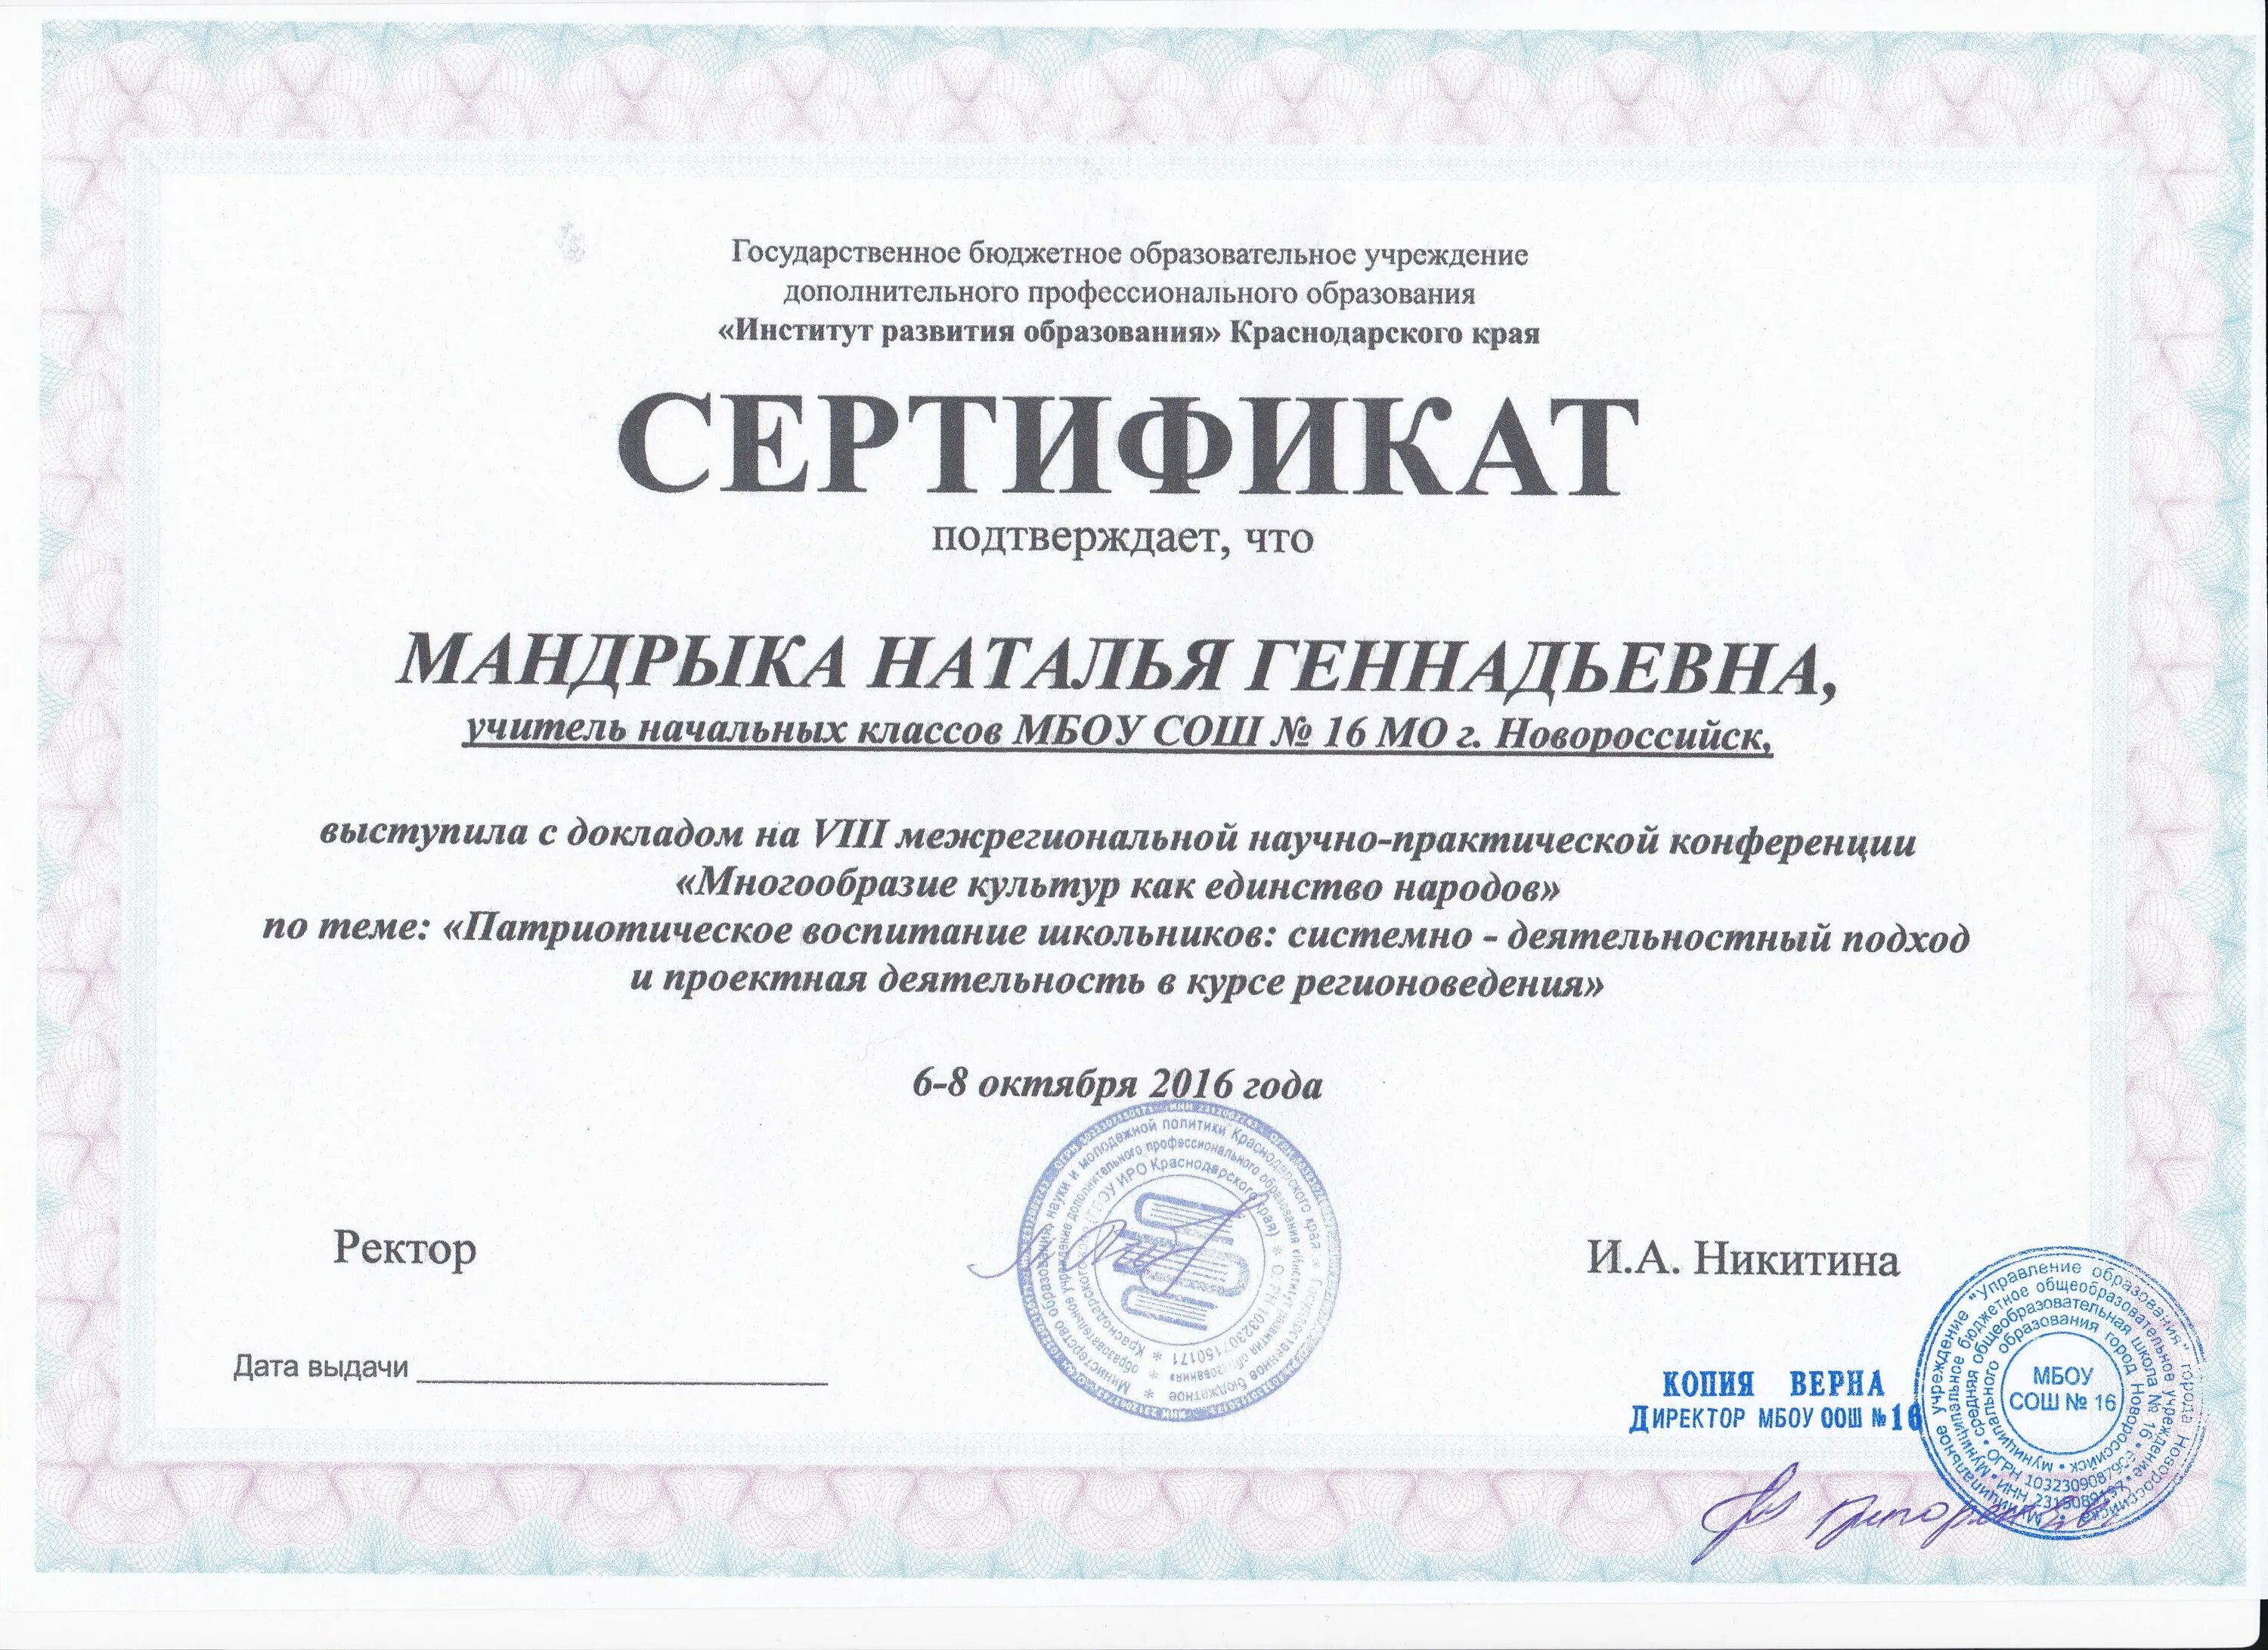 Институт развития образования Краснодарского края. Сертификат об опыте работы. Сертификаты обмен опытом. Практическая результаты 25 измерений